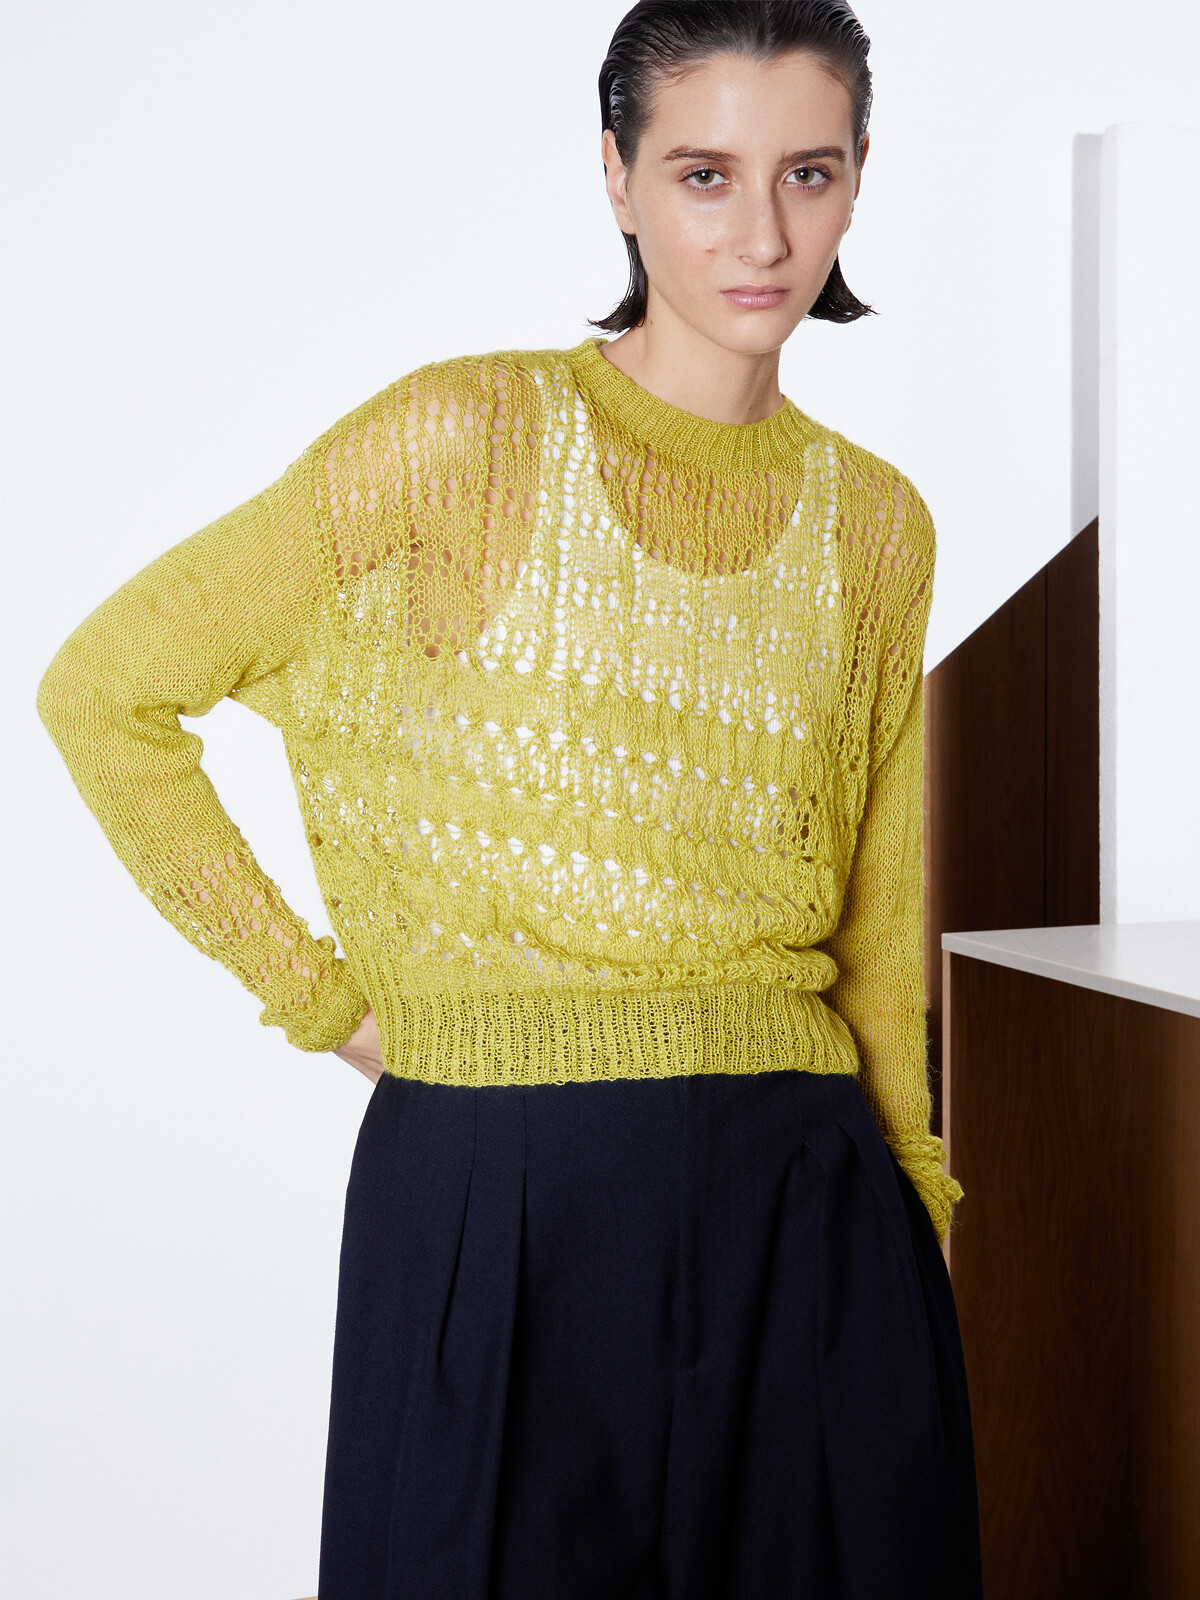 Lacy stitch sweater Image